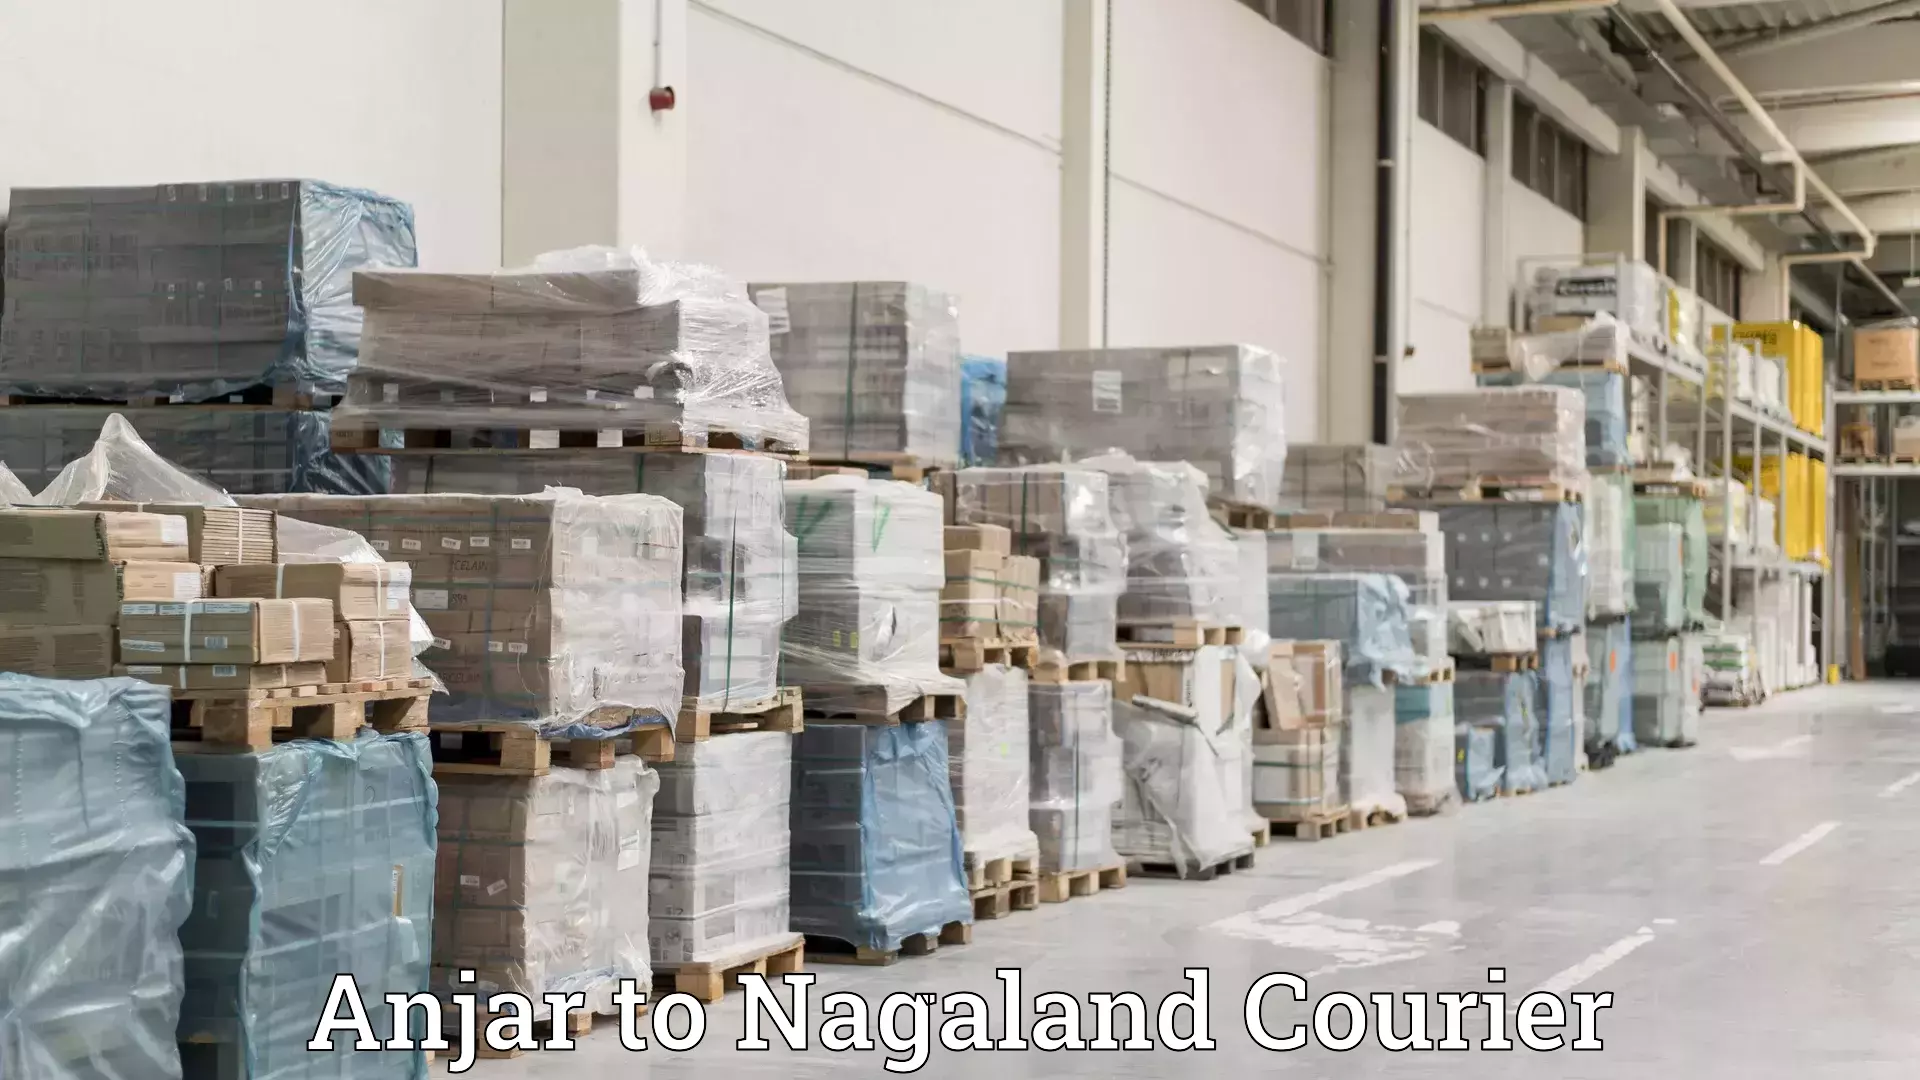 Efficient moving company Anjar to Nagaland